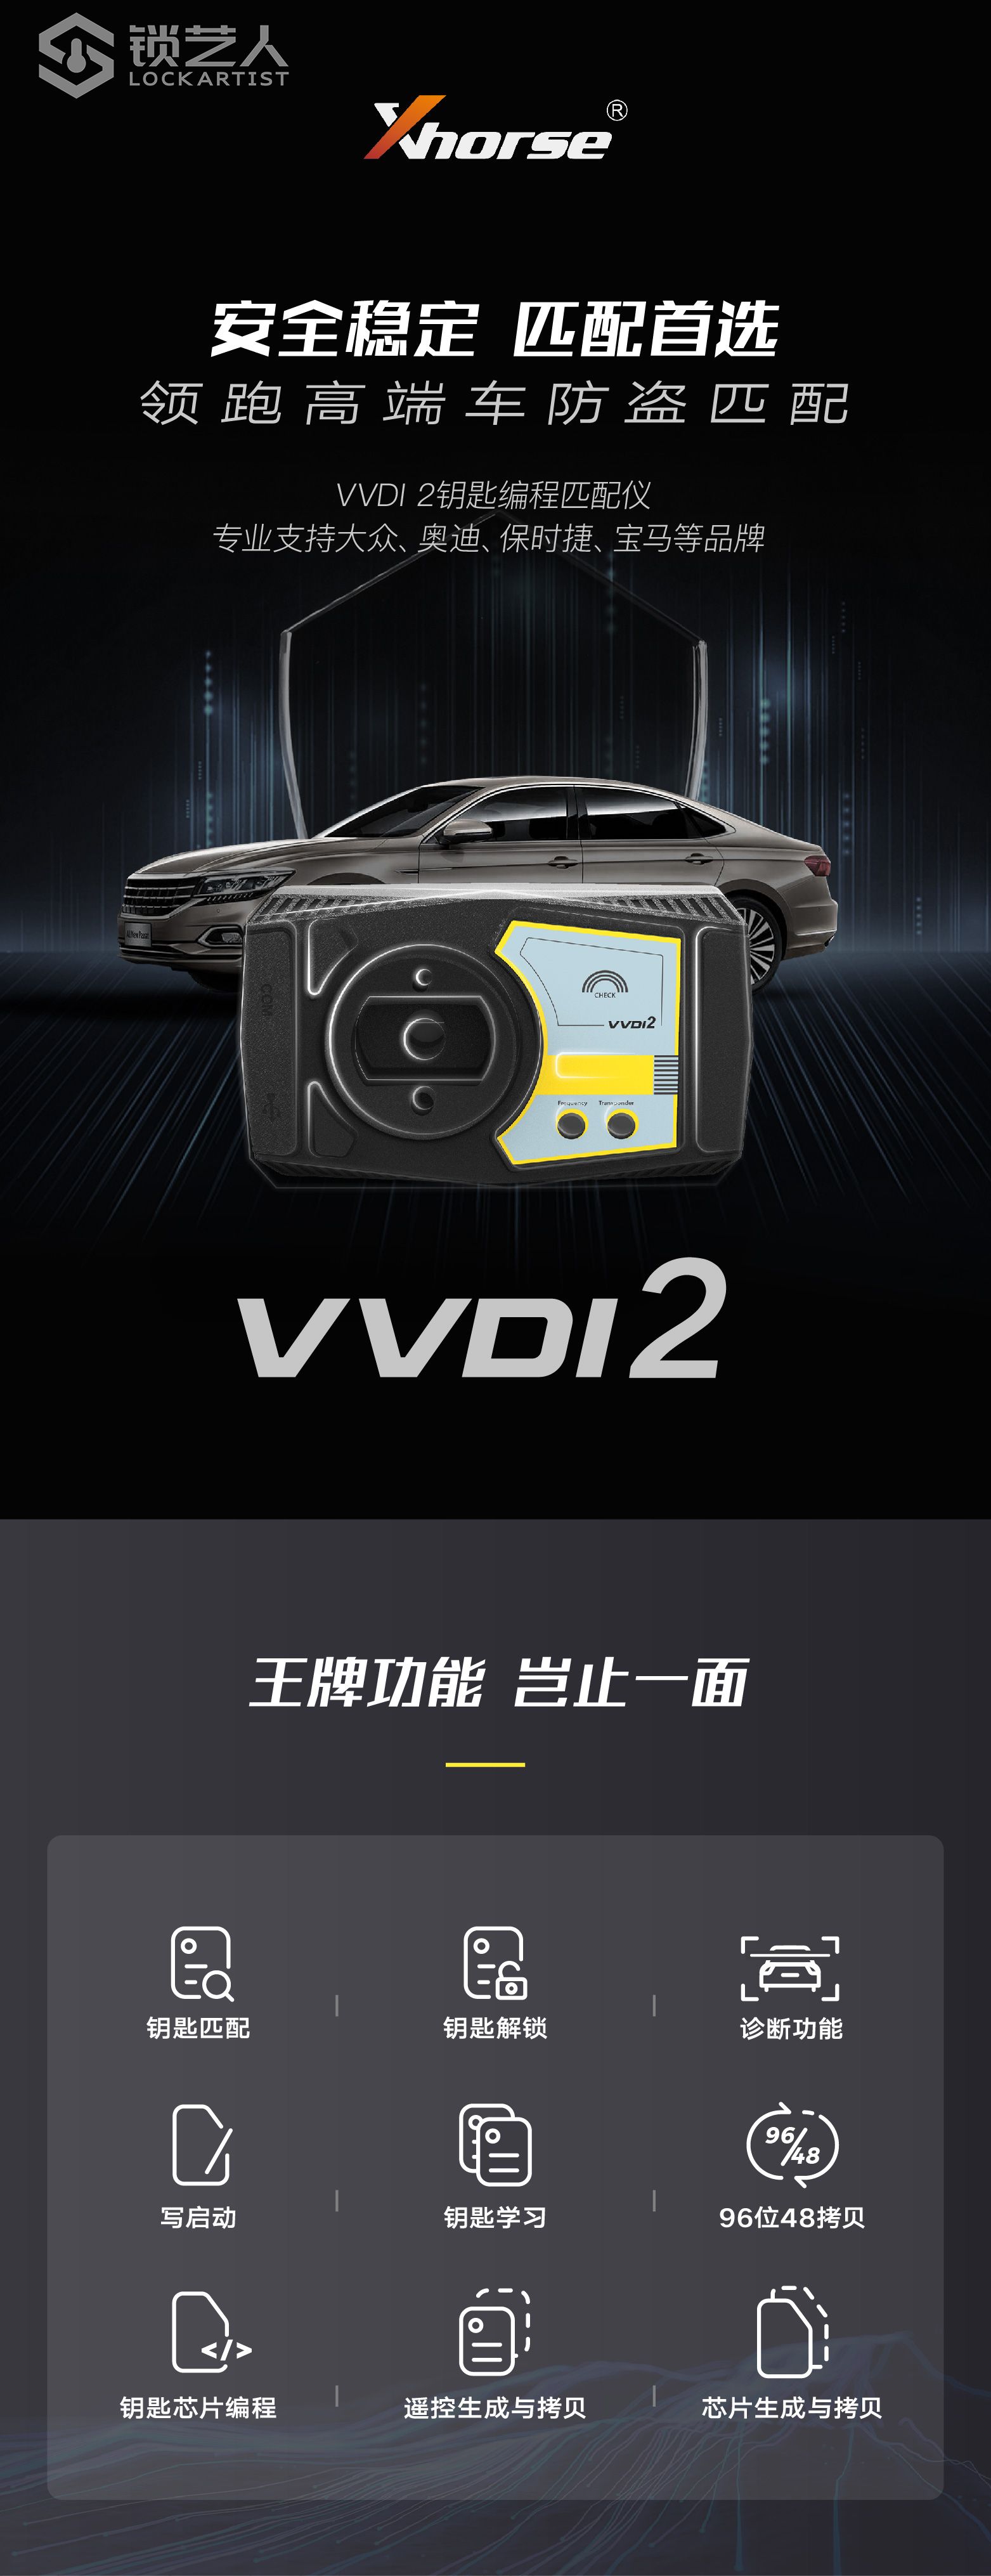 20210607 VVDI2详情页长图cn-01.jpg